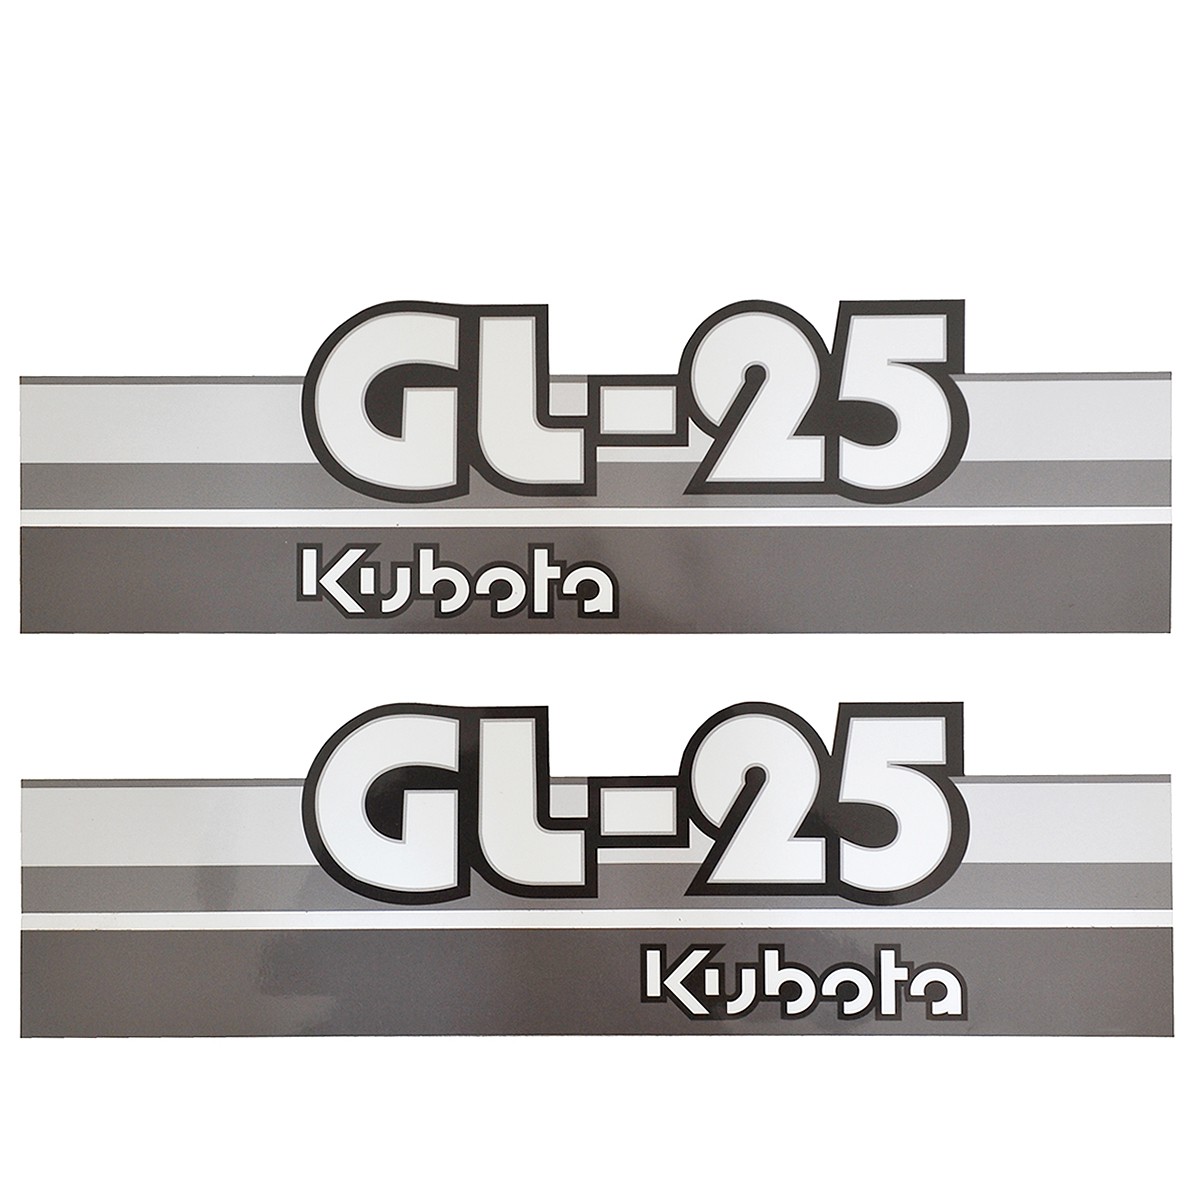 Adhesivos Kubota GL25